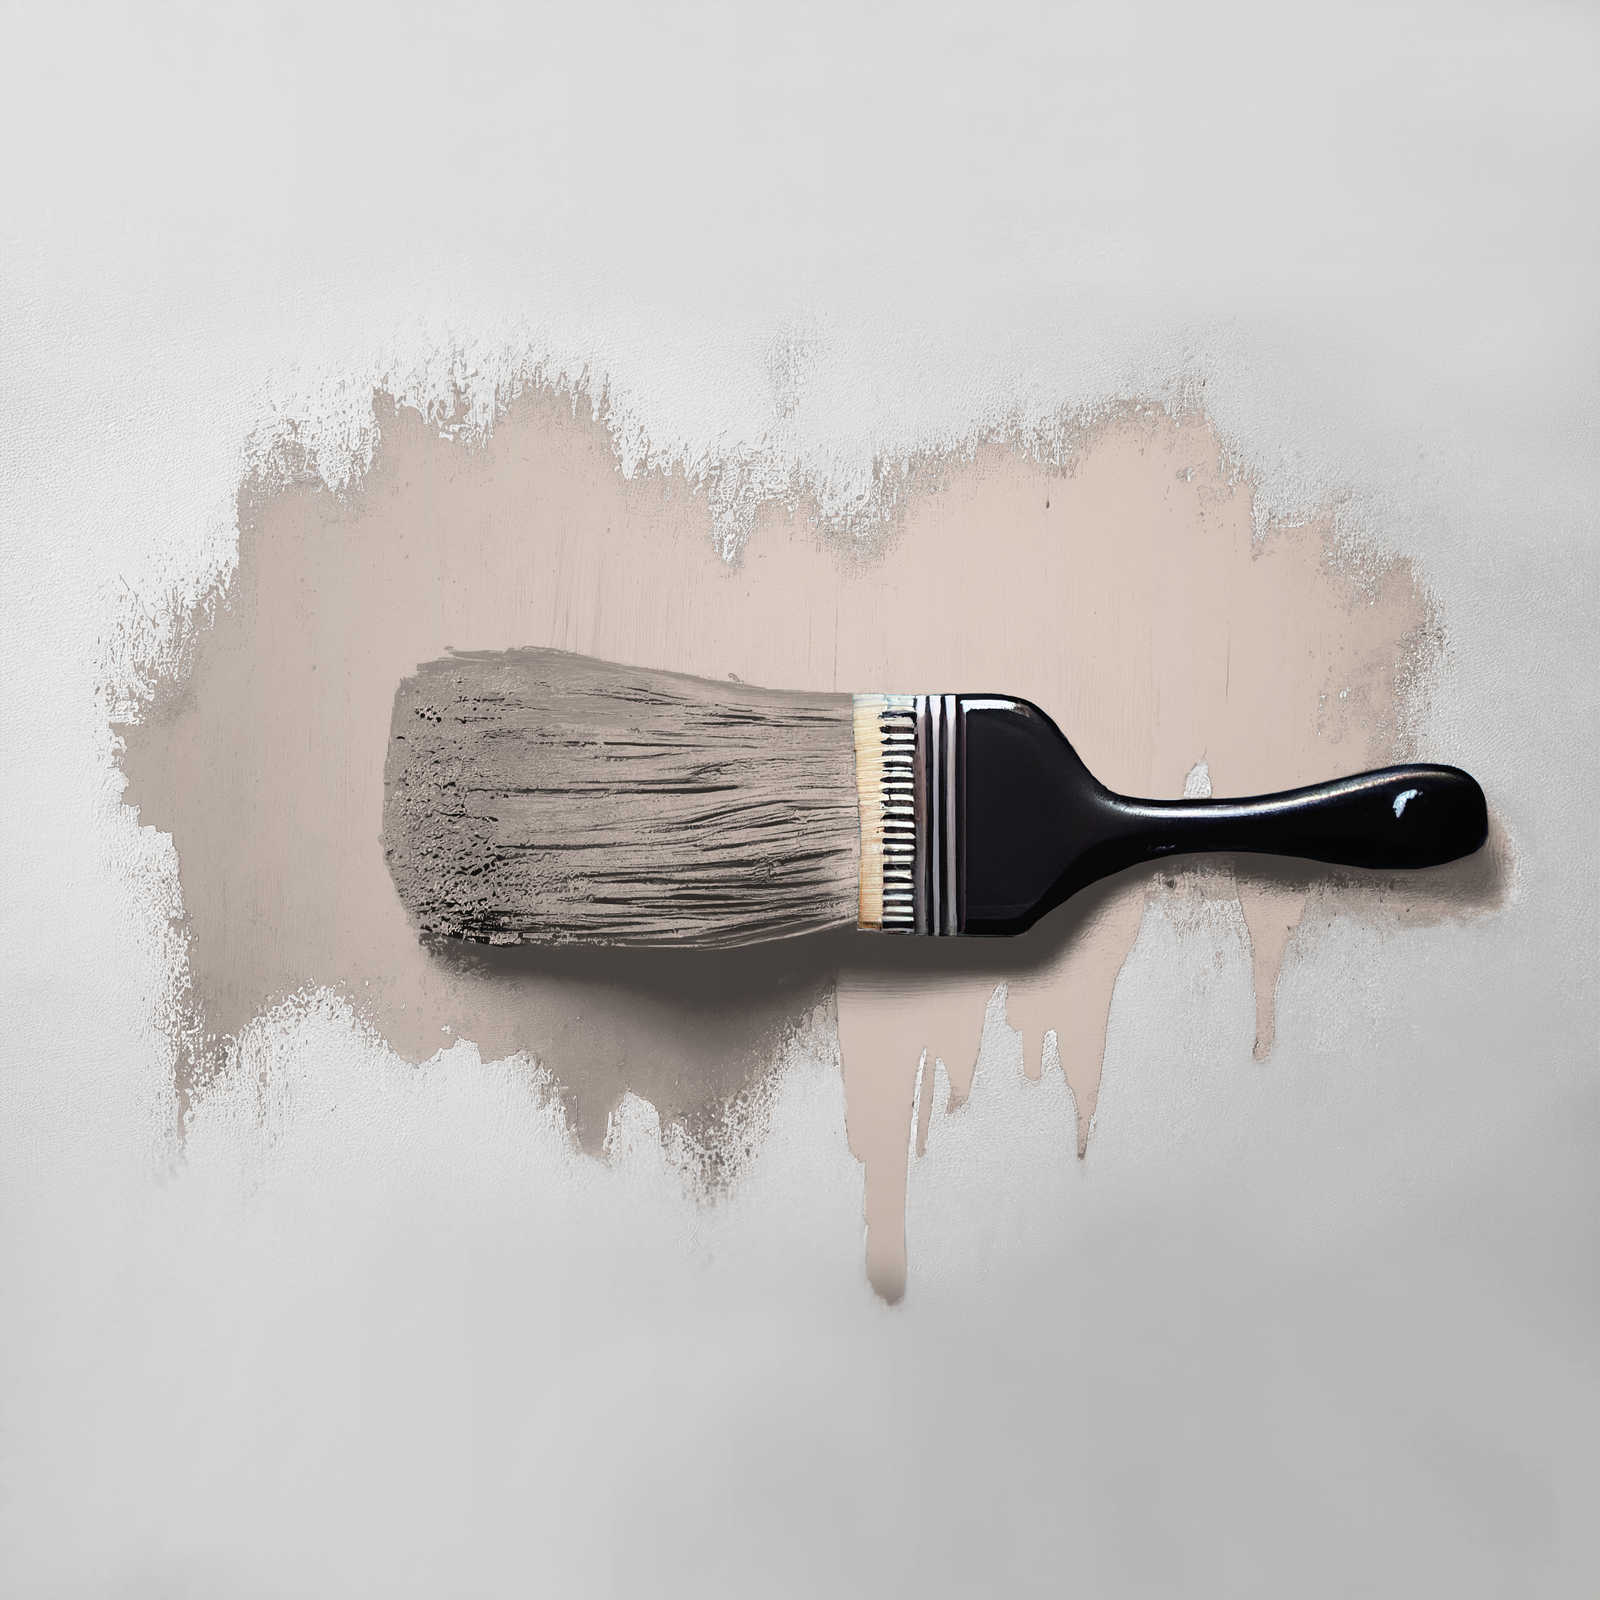             Pintura mural TCK6017 »Chilled Chai Latte« en gris suave – 2,5 litro
        